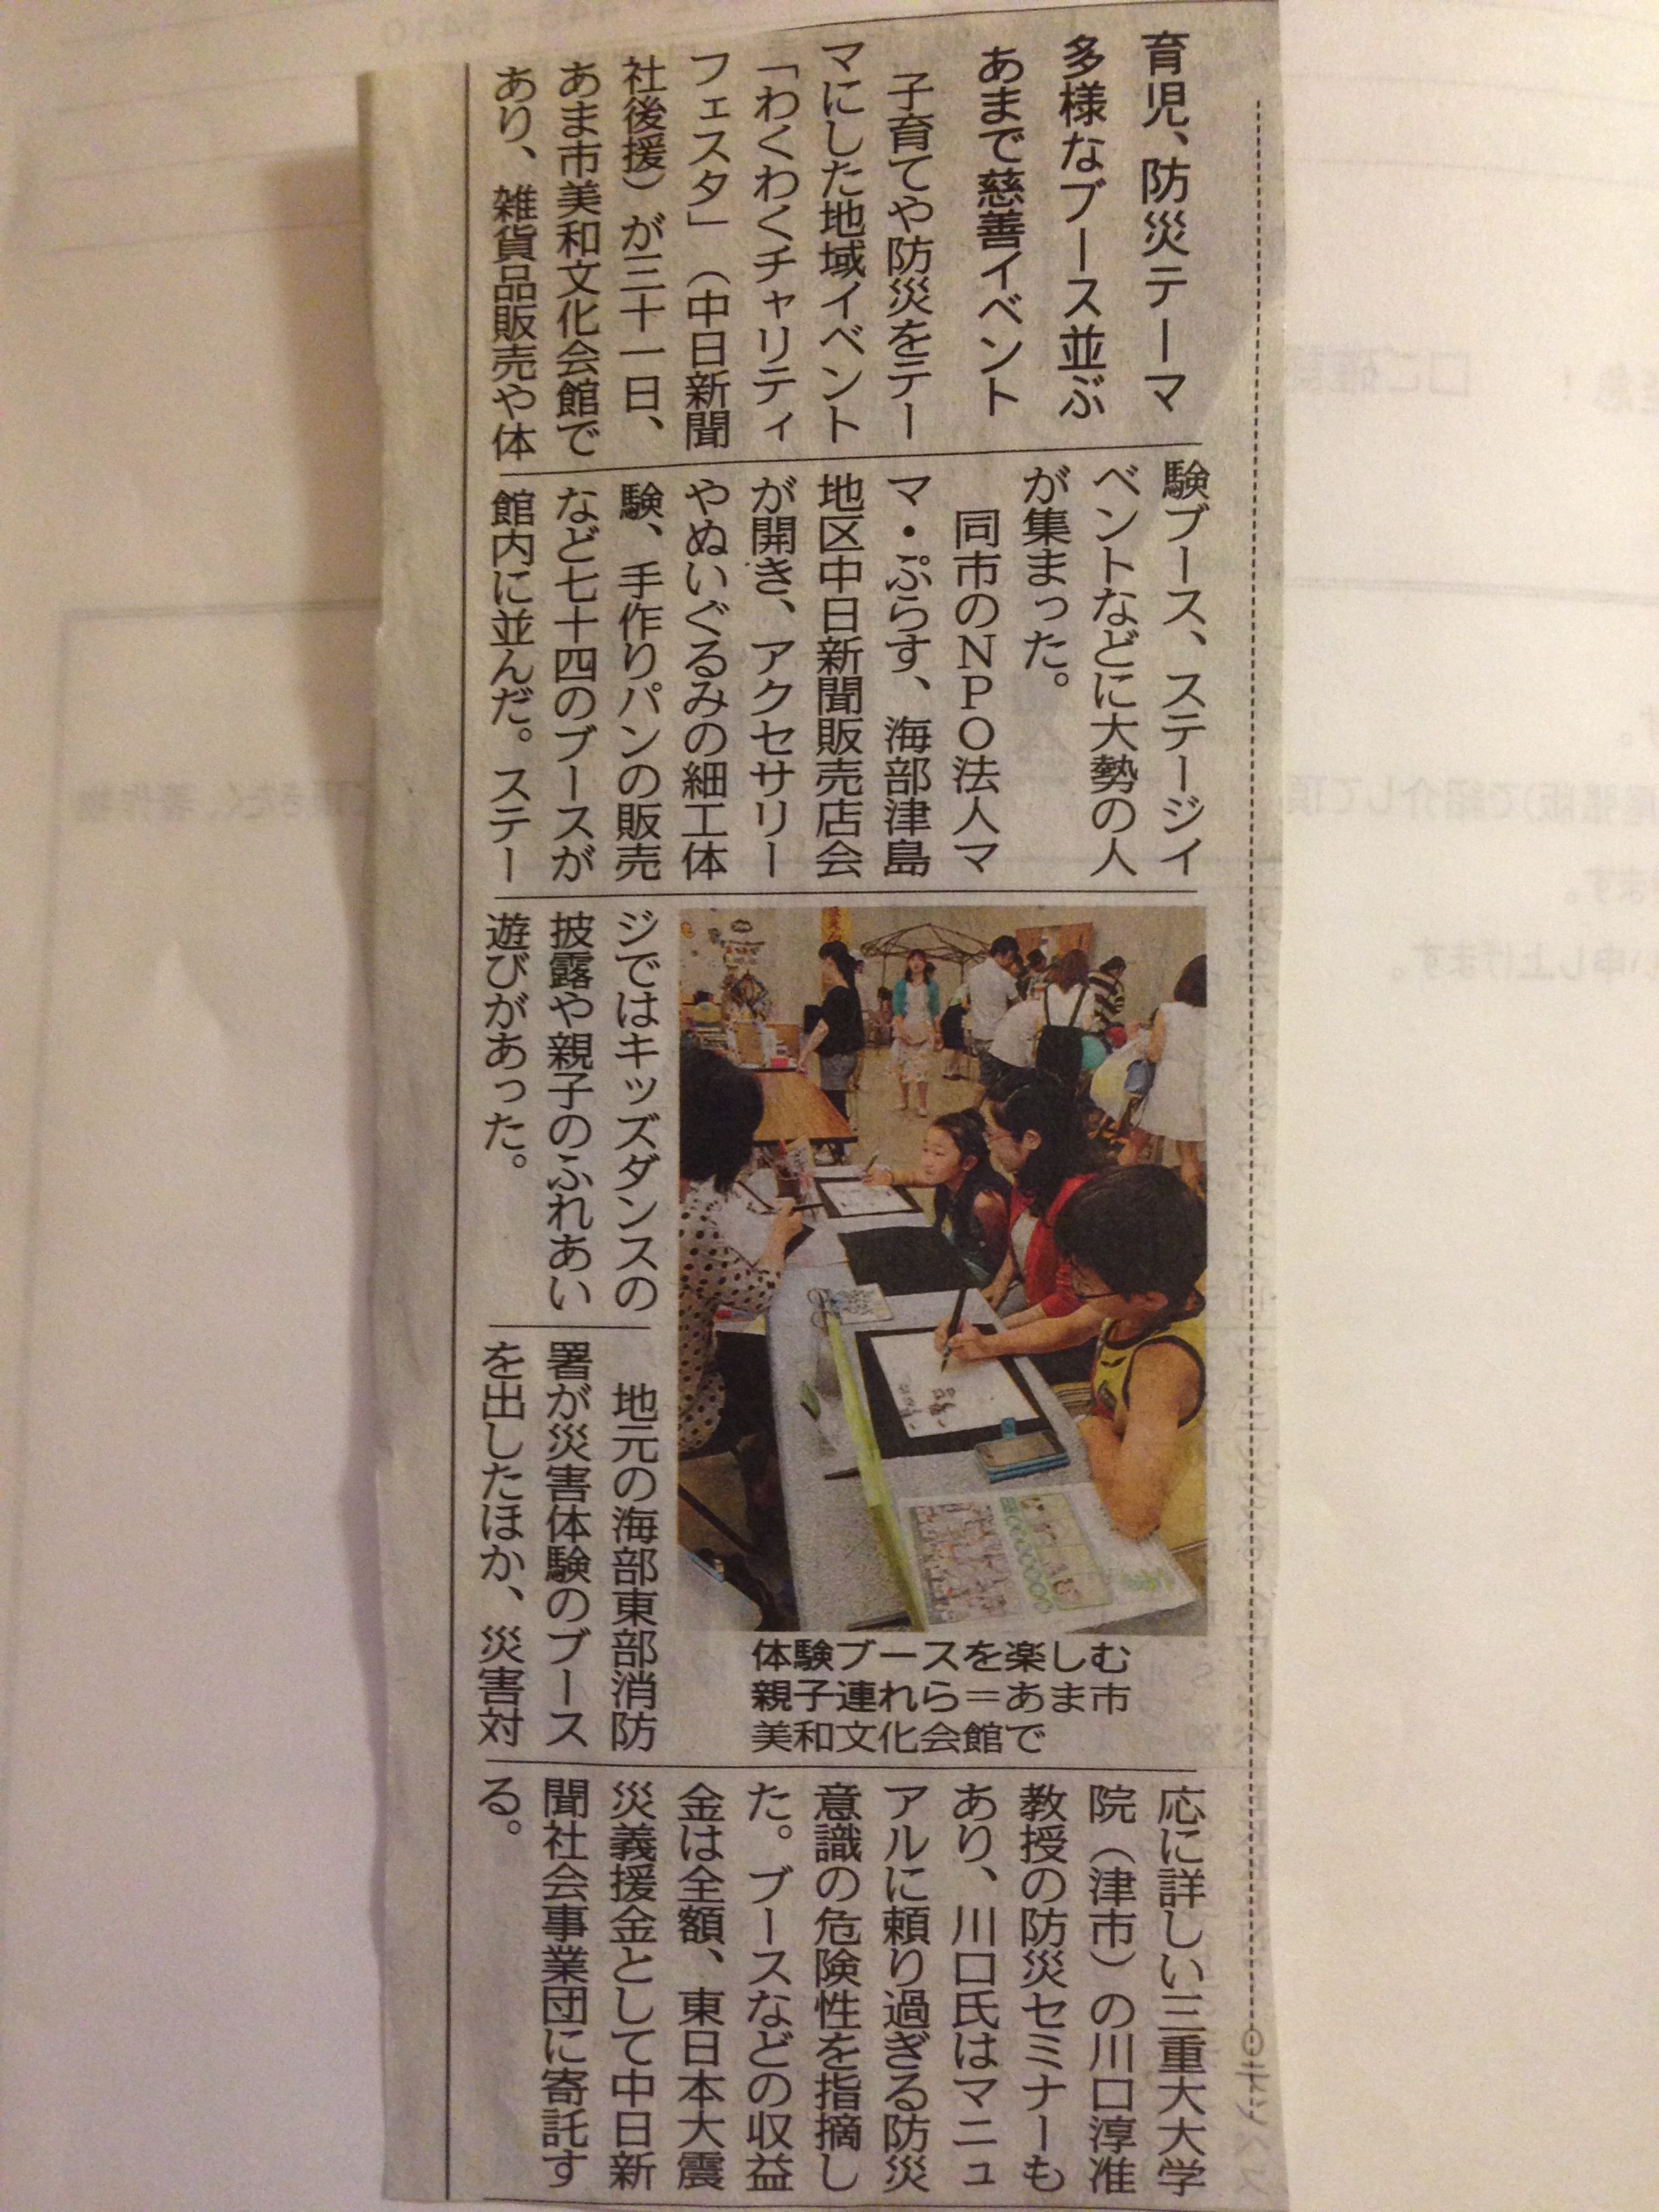 2015年6月1日：中日新聞「育児、防災テーマ多様なブース並ぶ」